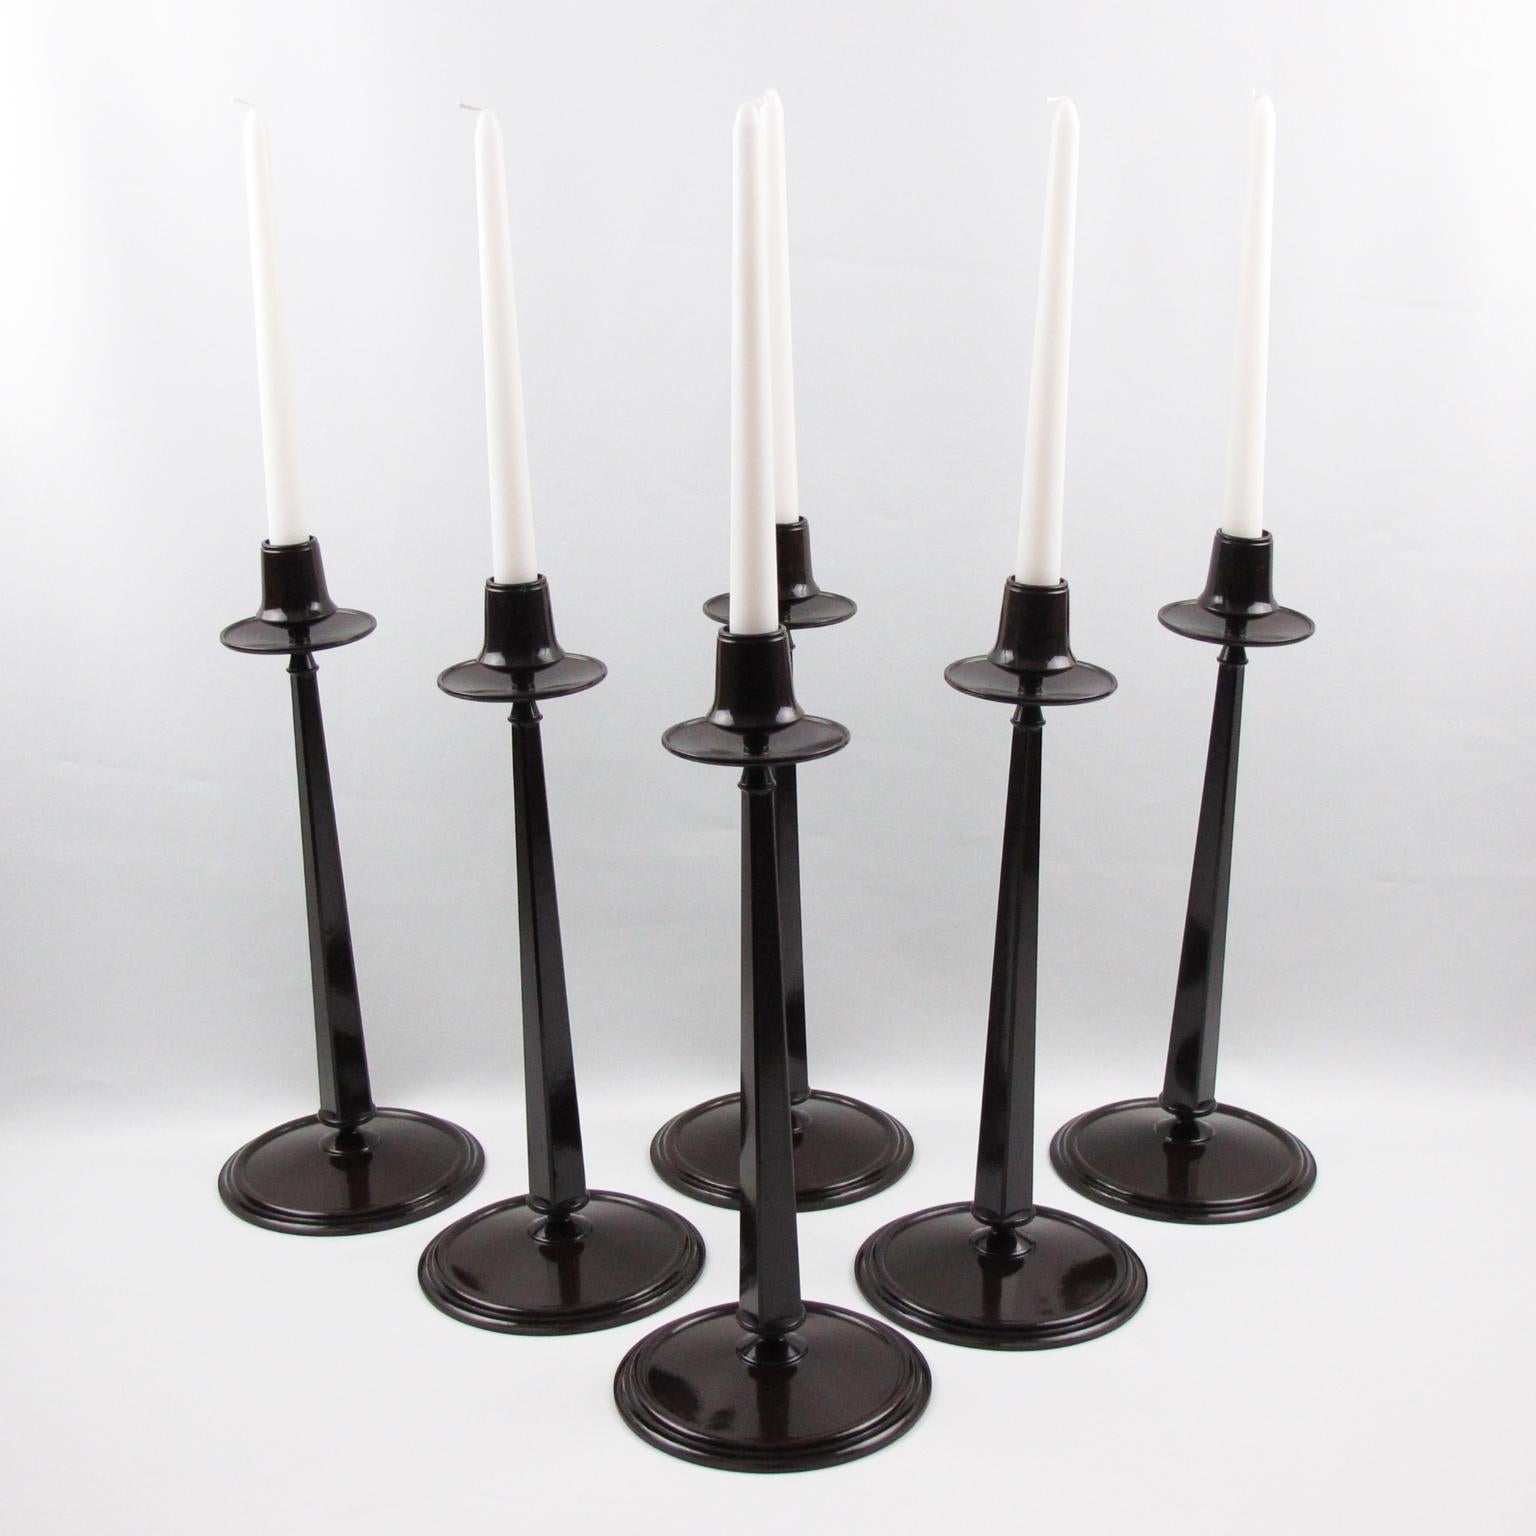 Art Deco Charles Rennie Mackintosh Jugendstil Bakelite Candlesticks Set, Six Pieces For Sale